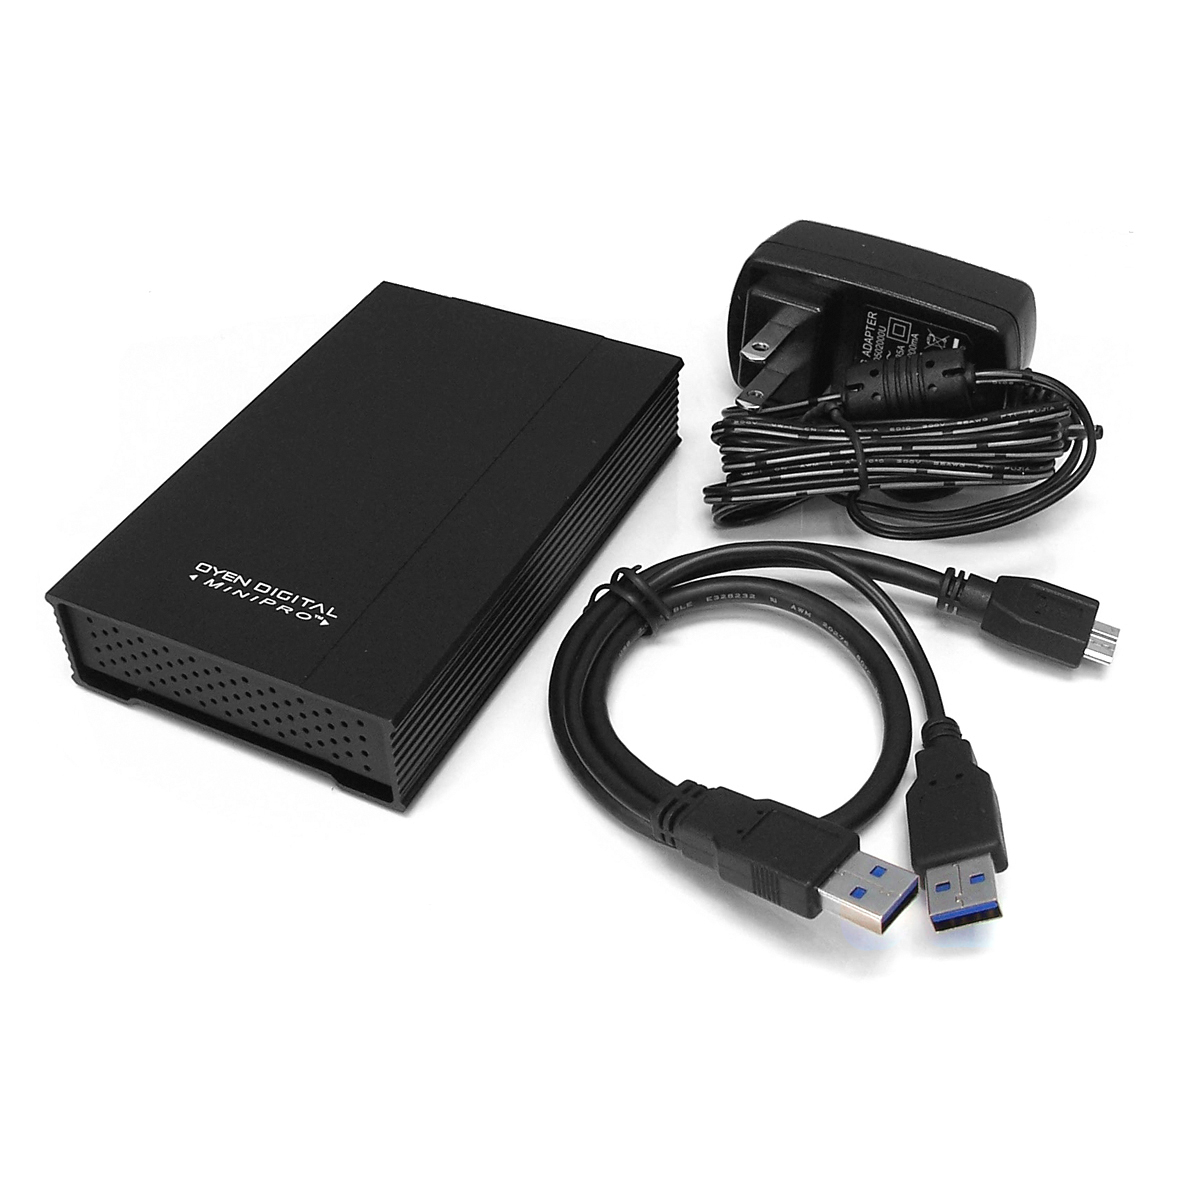 Oyen Digital: MiniPro 1TB External USB 3.0 Portable Hard 